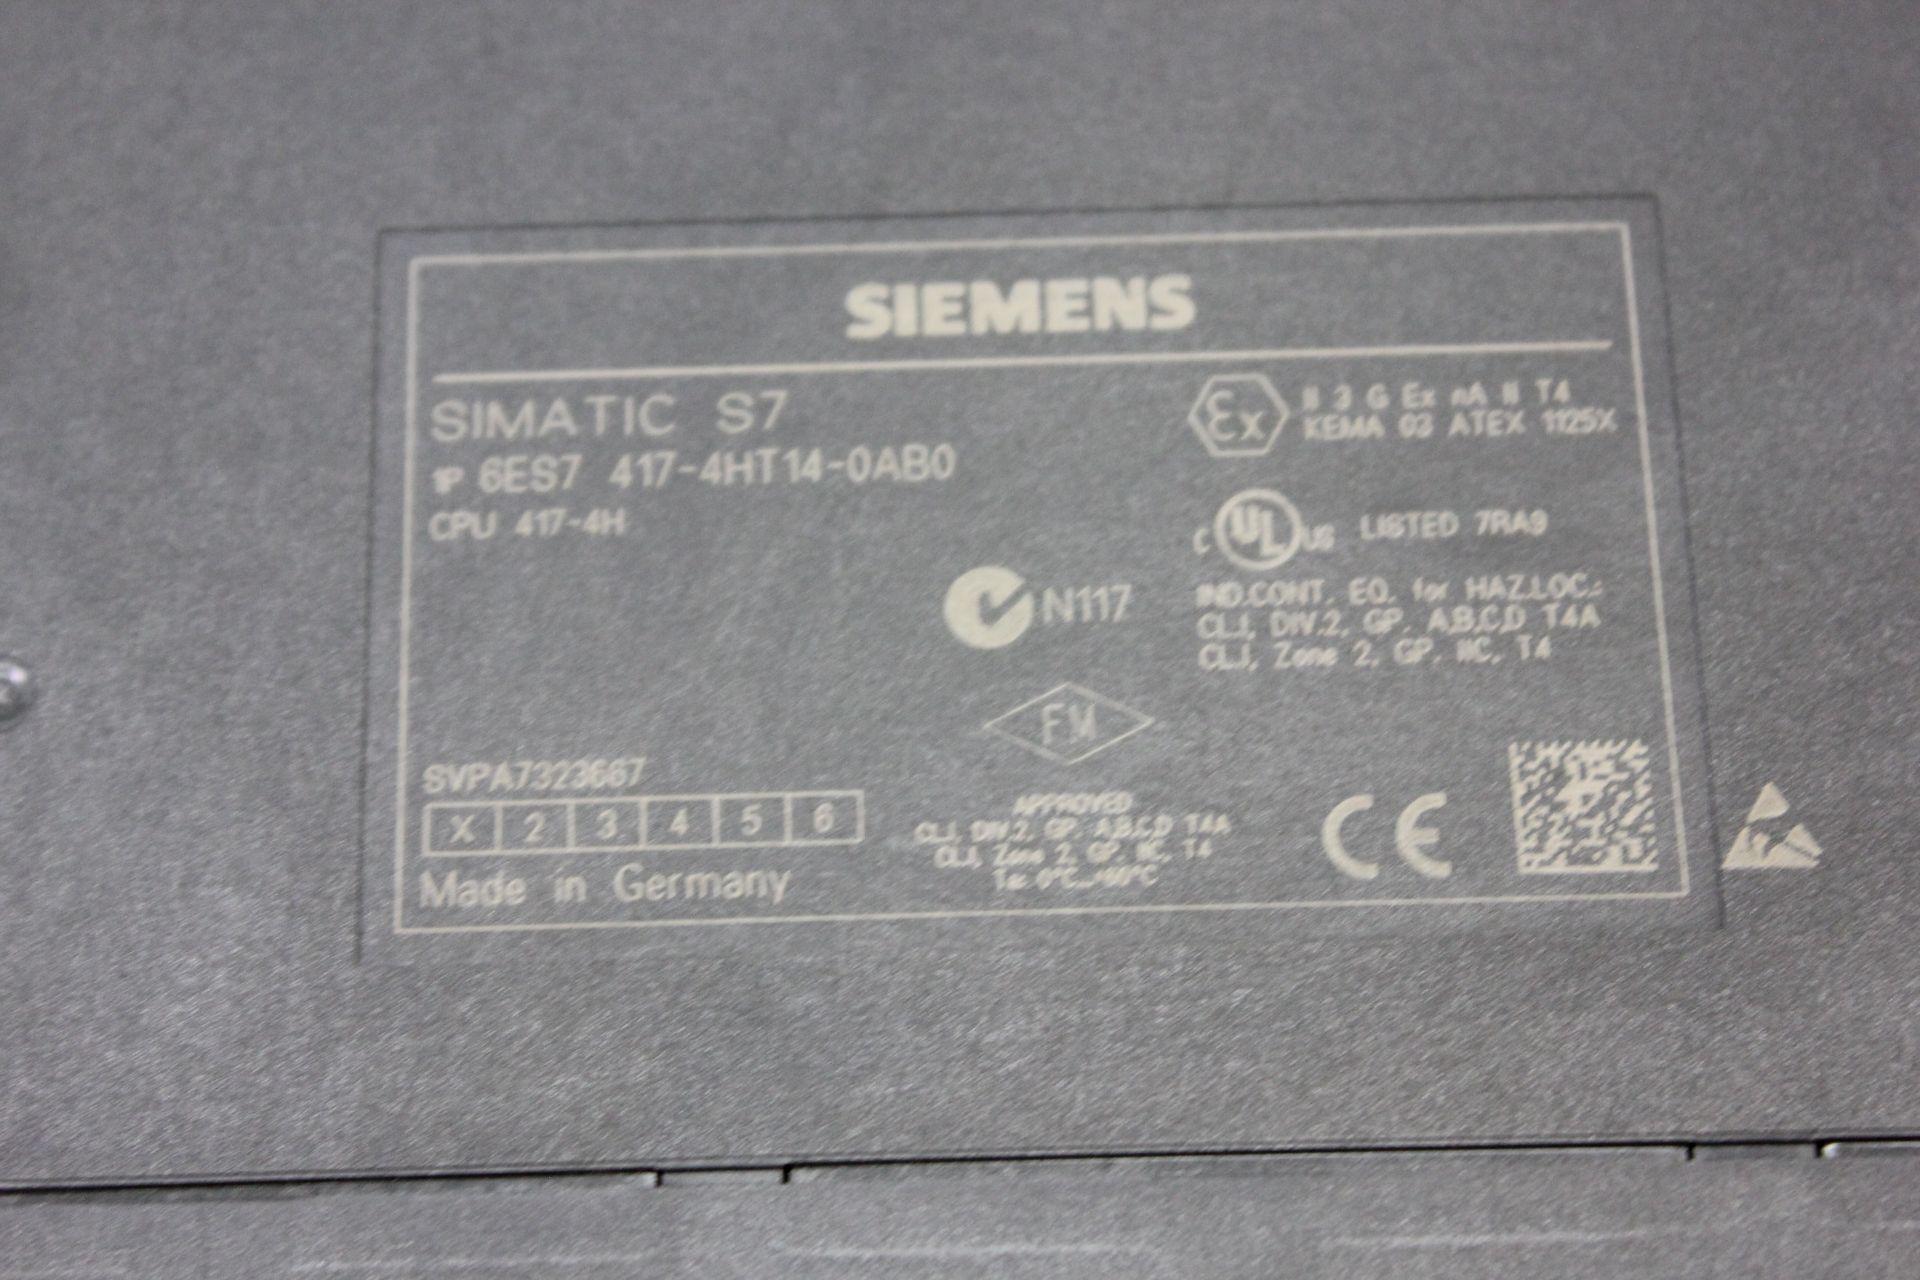 SIEMENS SIMATIC S7 CPU 417-4H PLC MODULE W/8MB MEMORY MODULE - Image 5 of 5